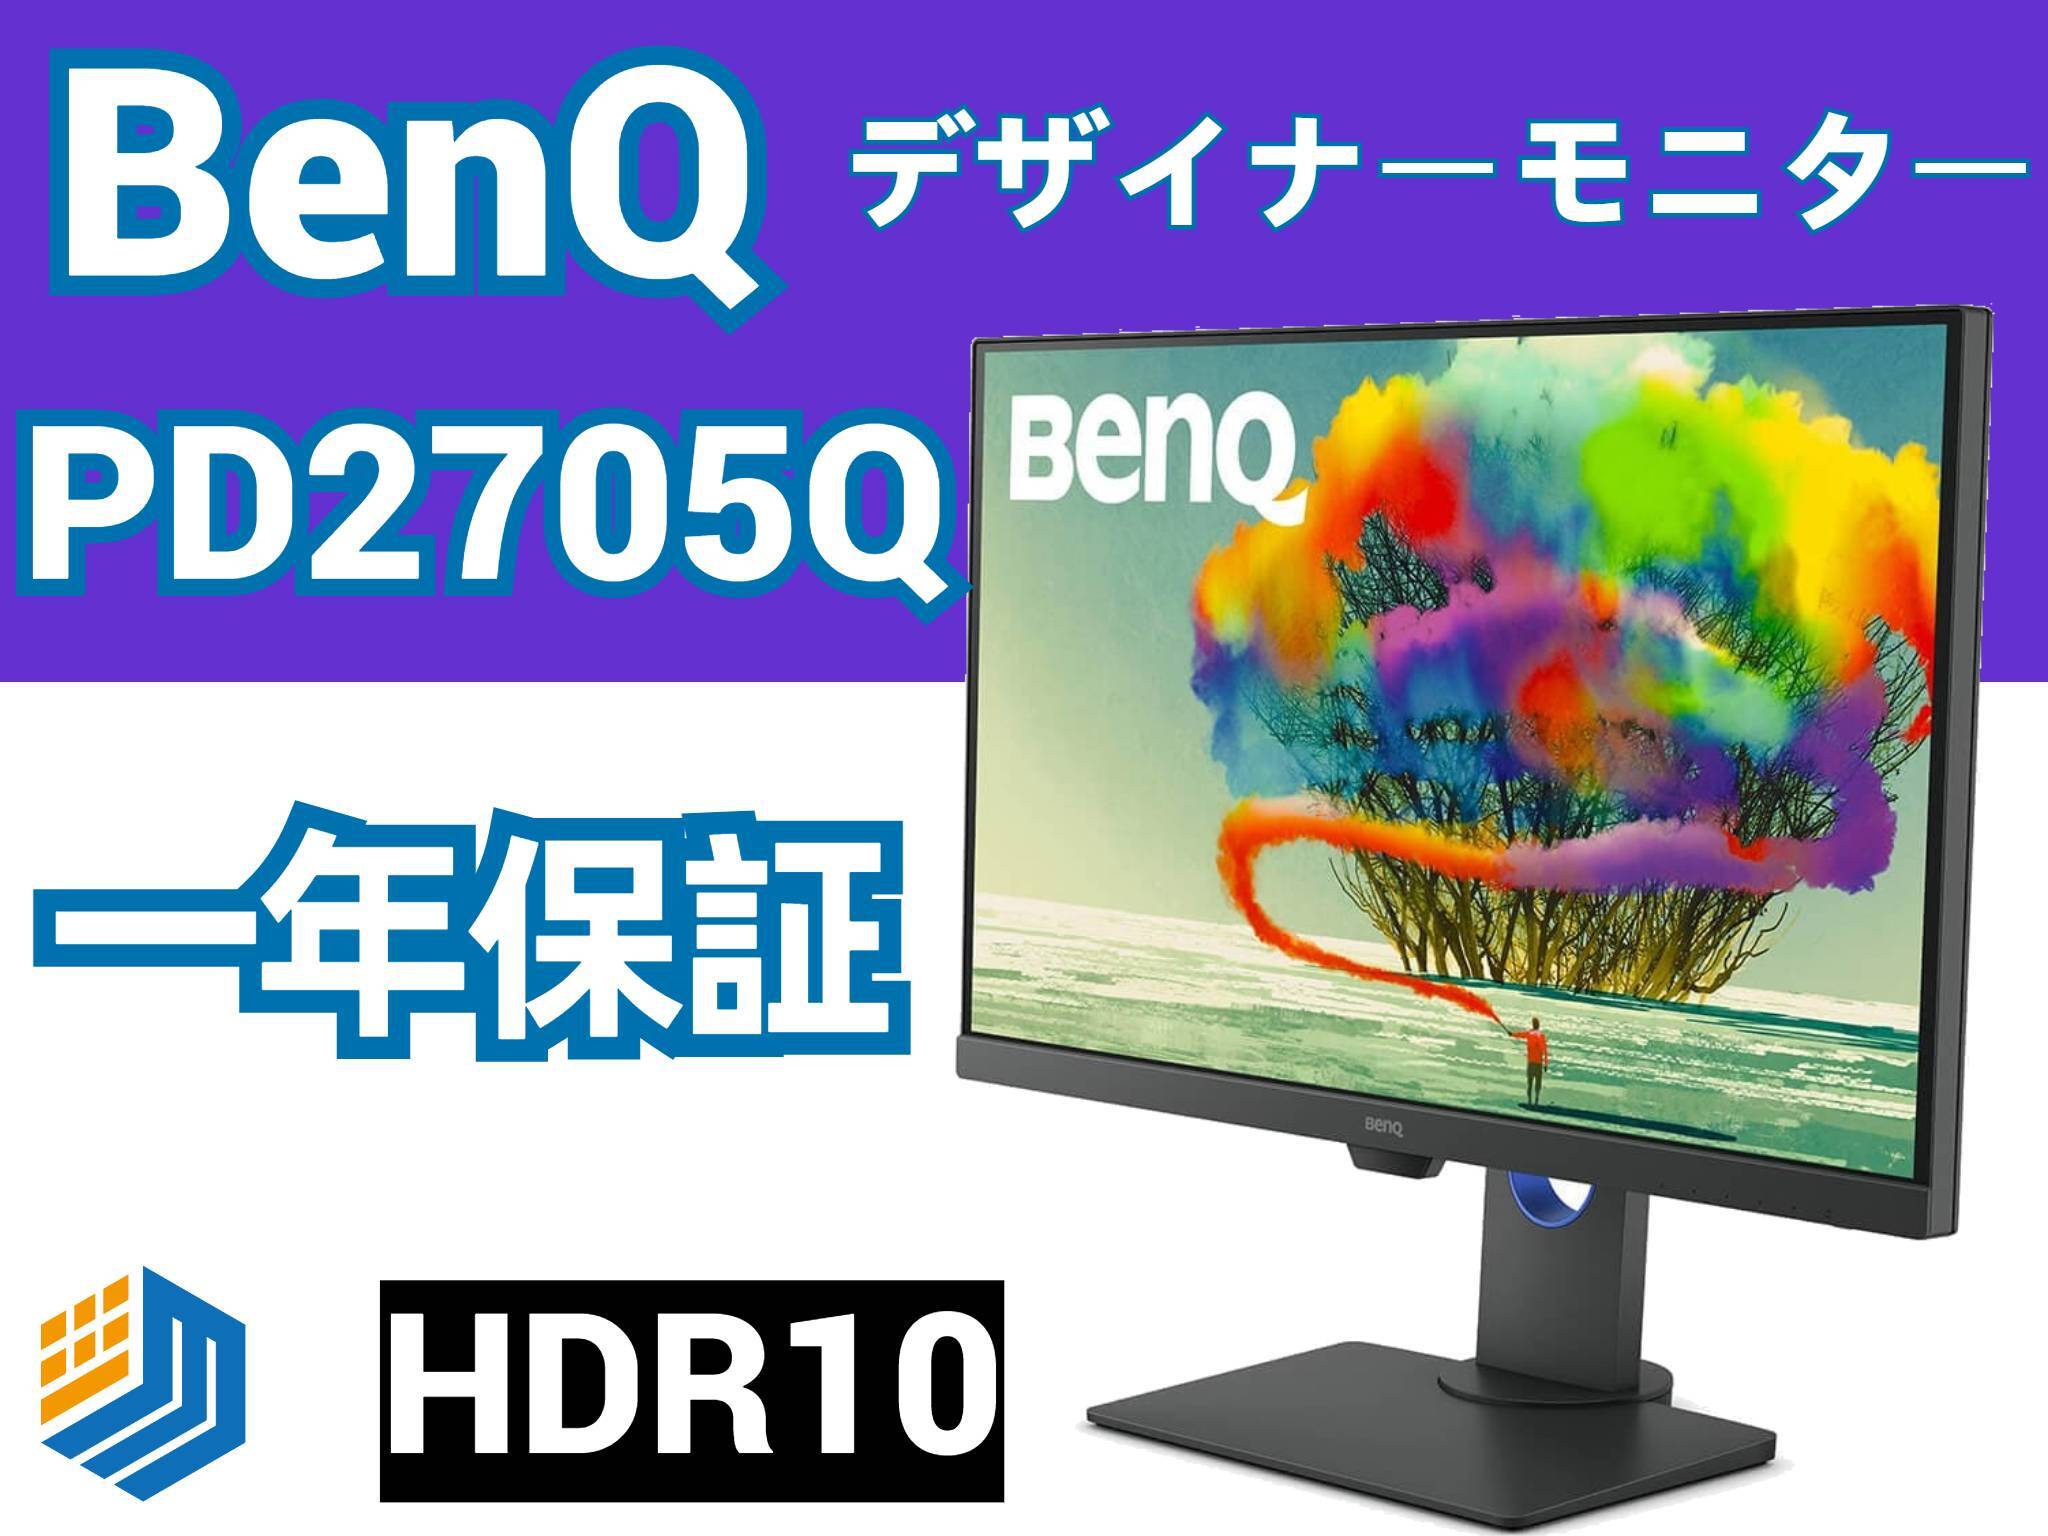 BenQ PD2705Q デザイナー向けモニター (27インチ/WQHD)